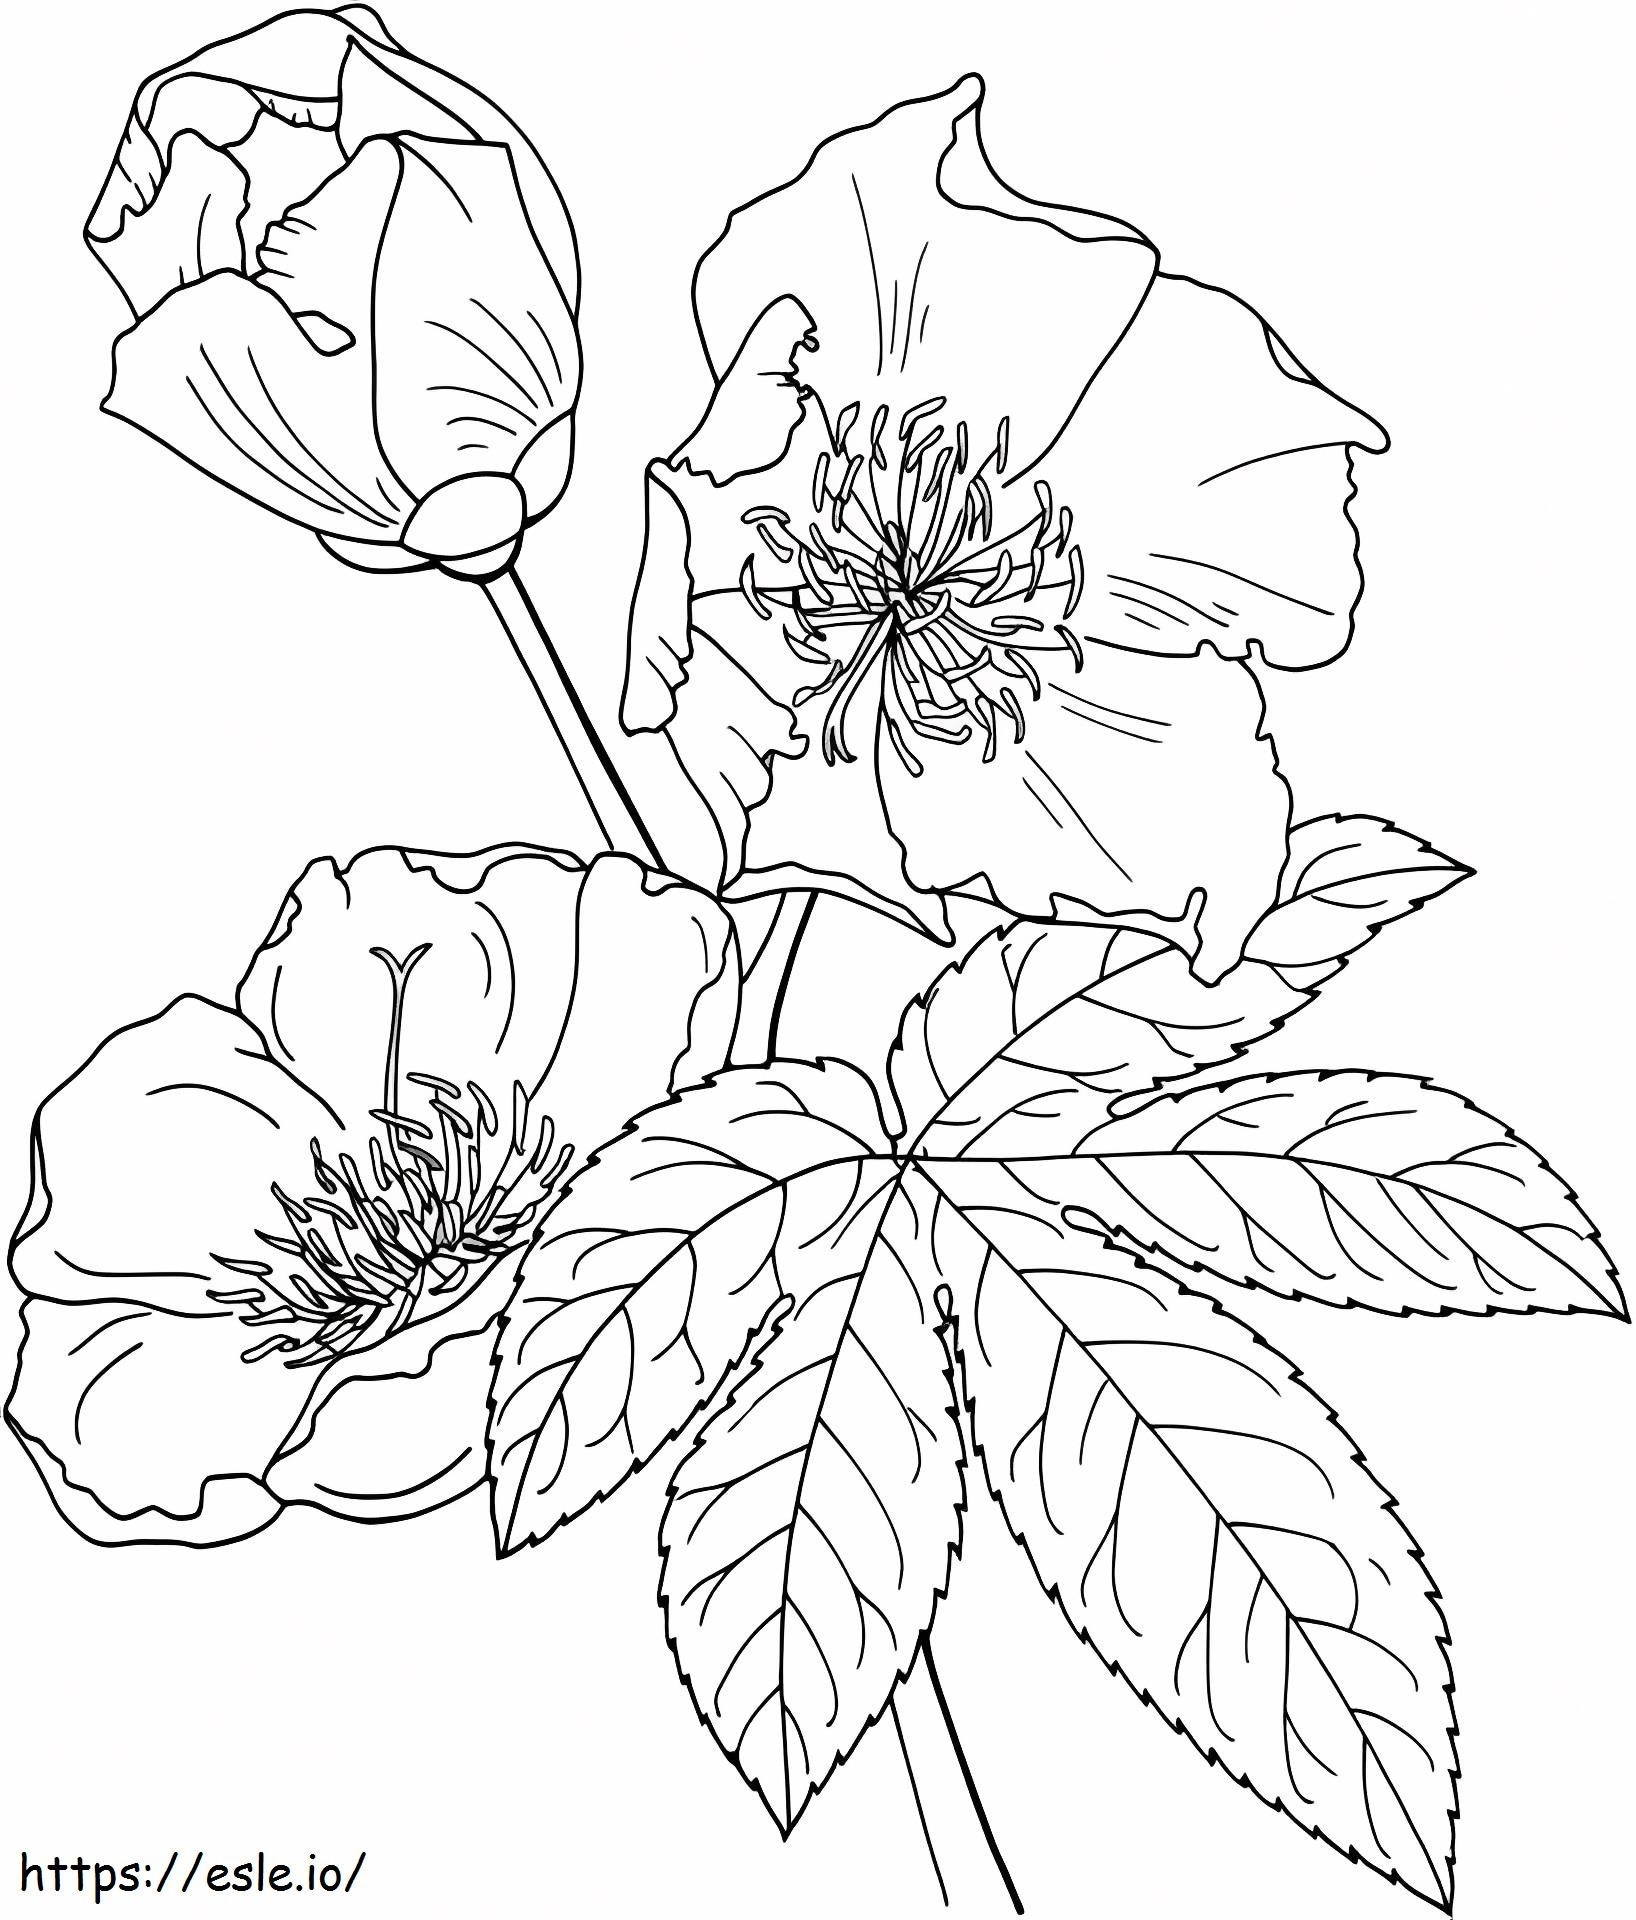 1527065135_Cochlospermum Vitifolium sau Arborele Buttercup de colorat